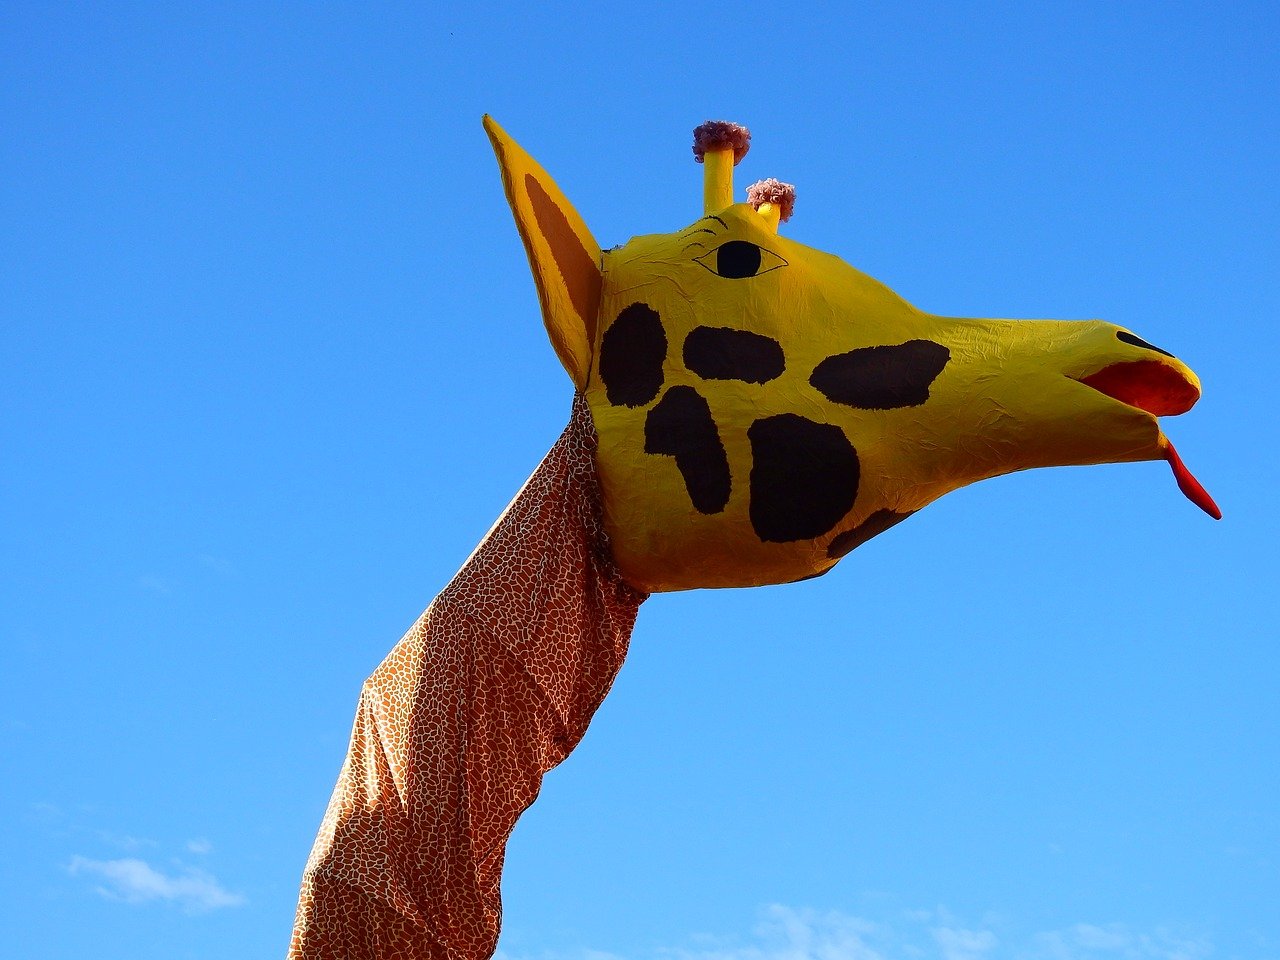 La "filastrocca mascherata da giraffa" da insegnare ai bambini